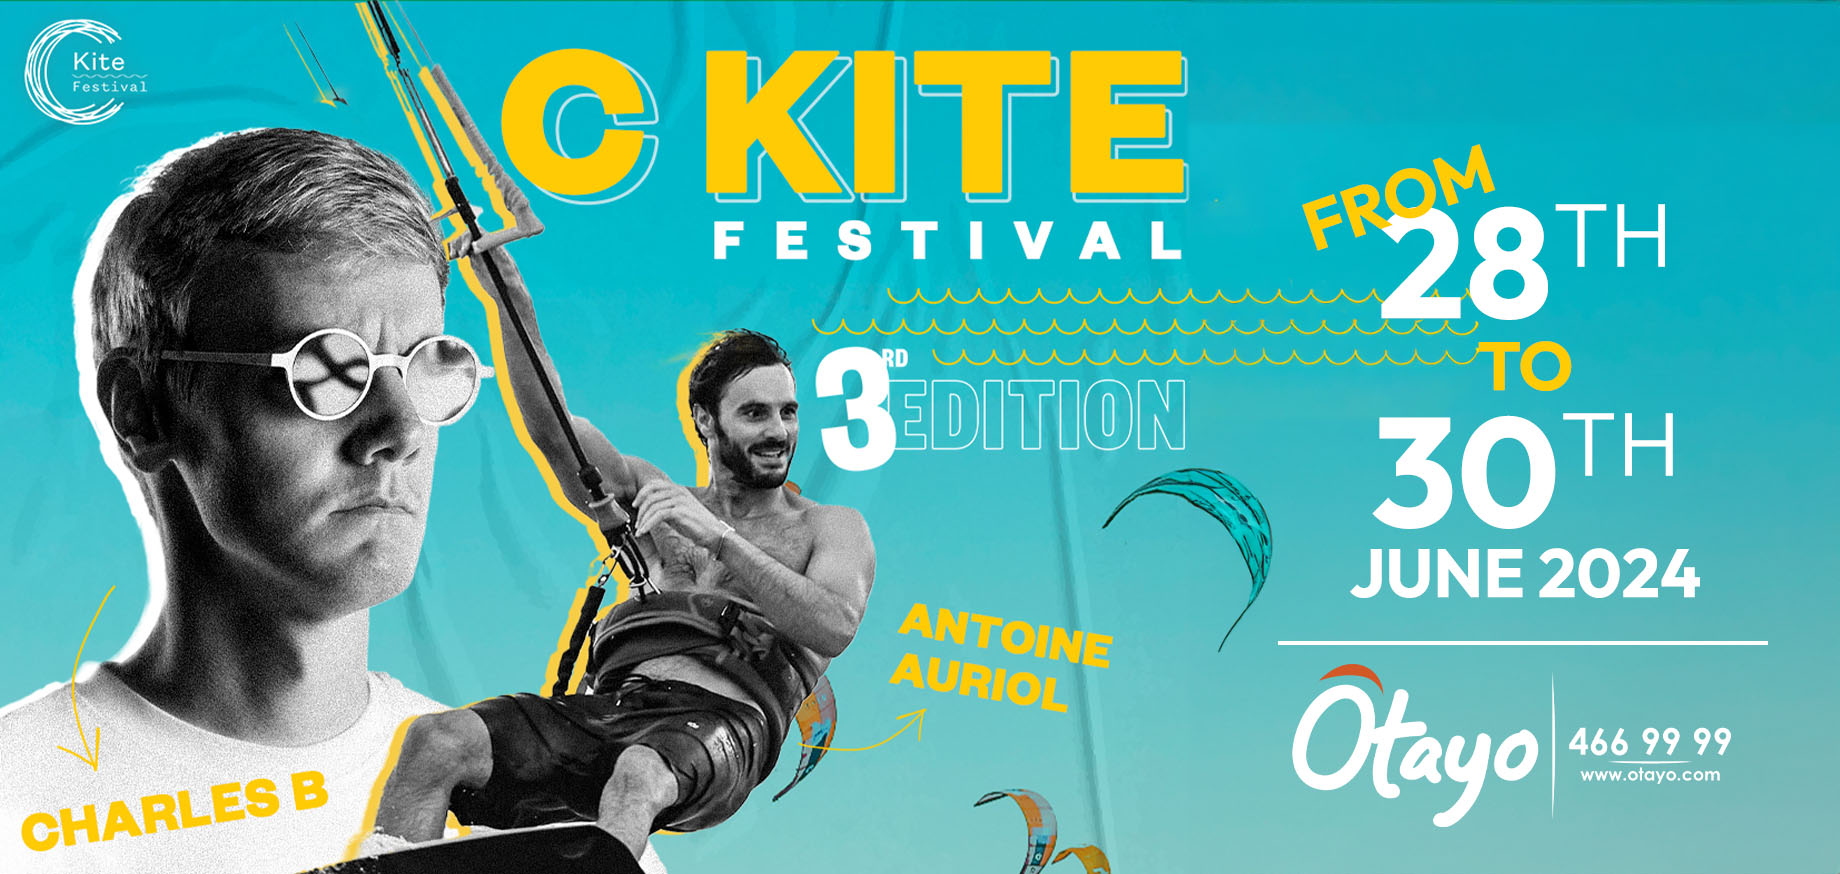 C Kite Festival – Friday 28th June slider image